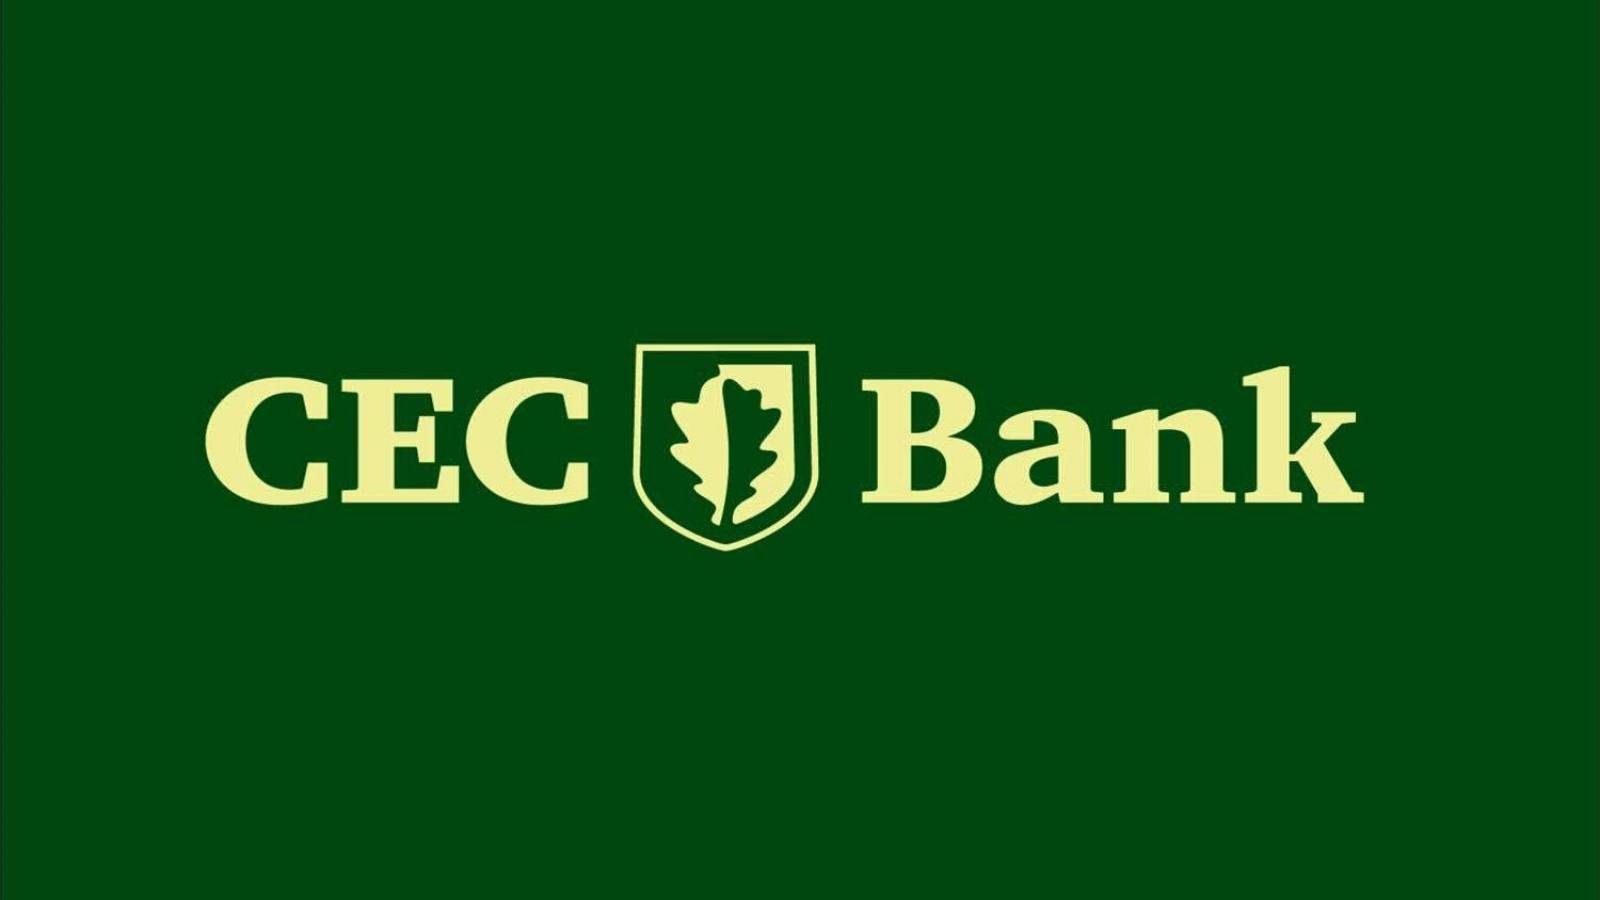 Banco CEC garmin